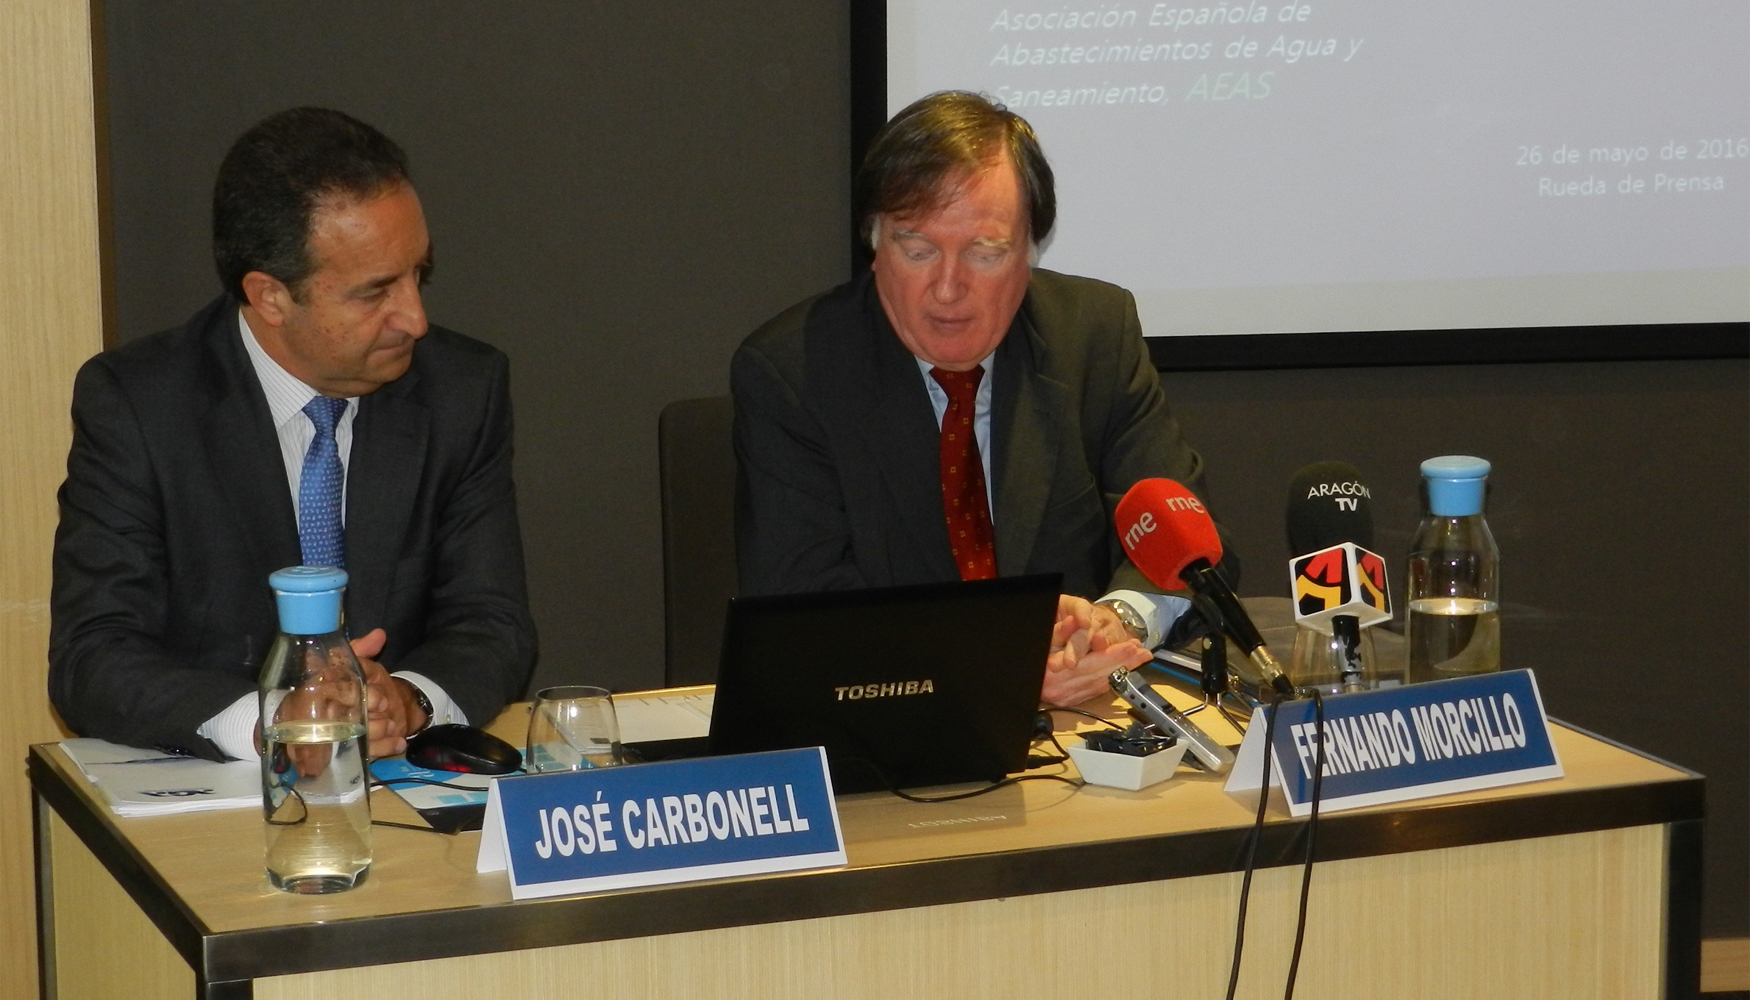 De izquierda a derecha: Jos Carbonell, presidente de AGA, y Fernando Morcillo, presidente de Aeas